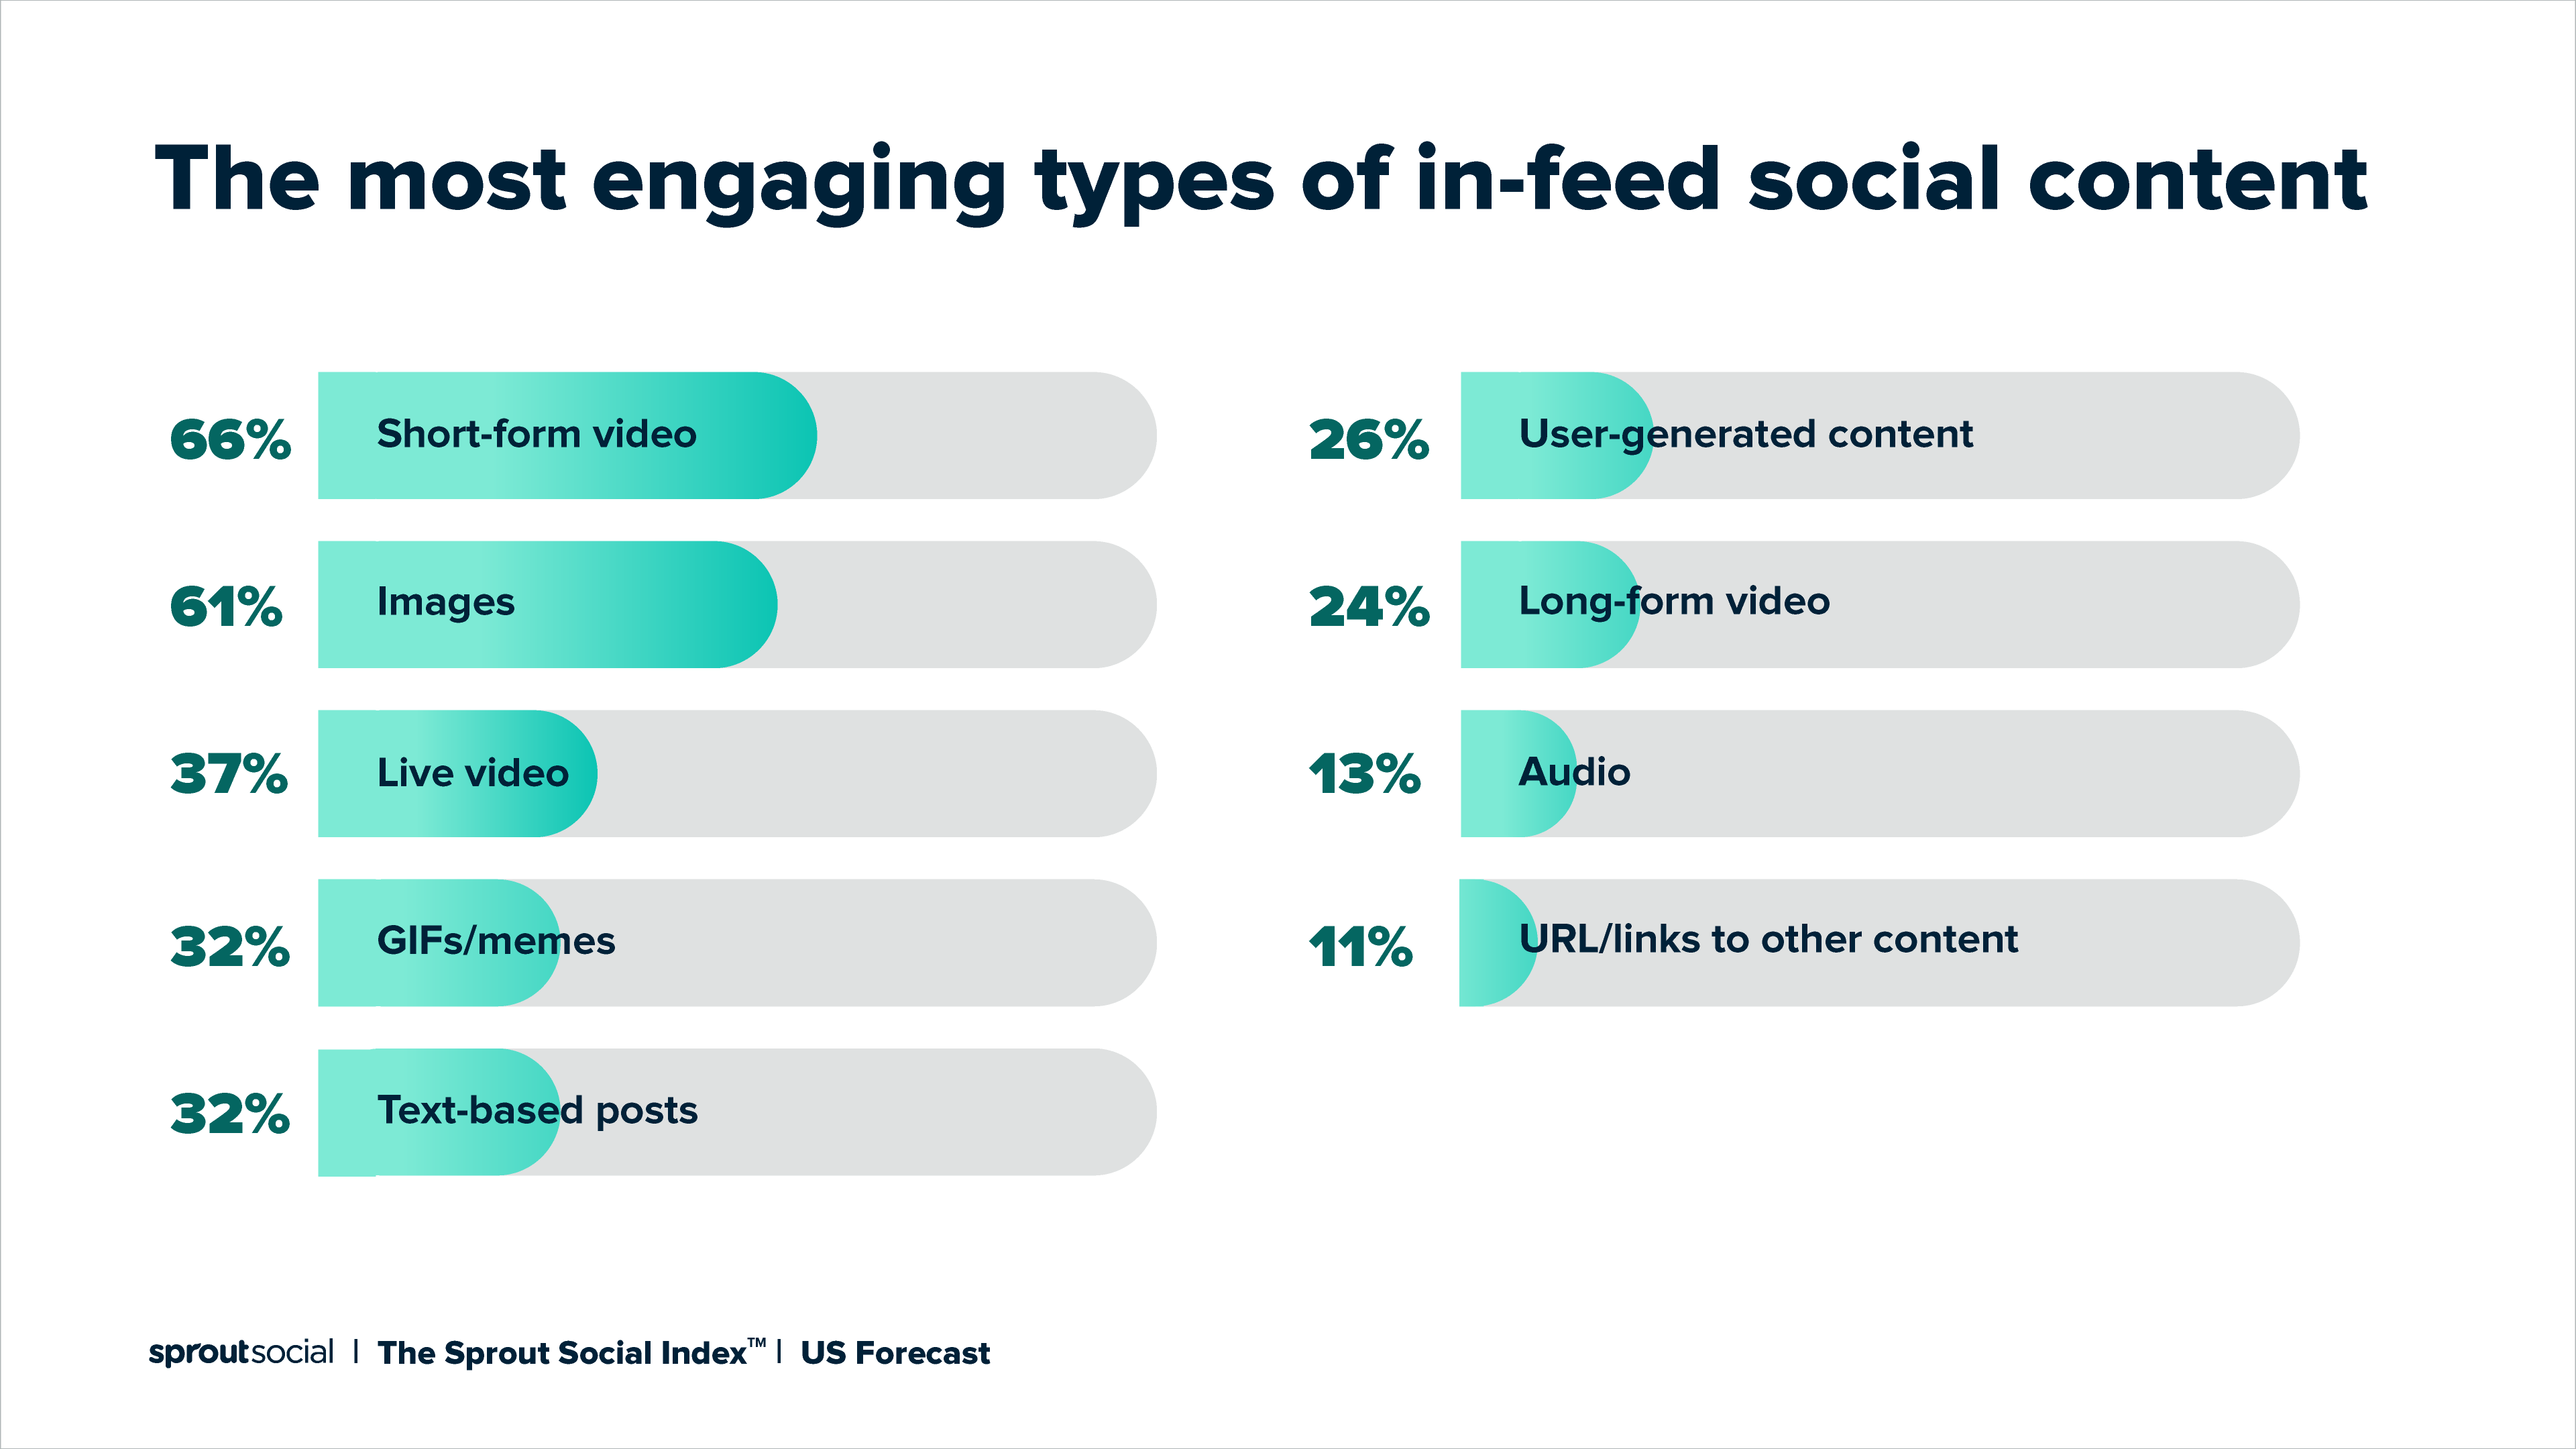 Một biểu đồ chia sẻ các loại nội dung xã hội trong nguồn cấp dữ liệu hấp dẫn nhất, với video dạng ngắn chiếm vị trí đầu tiên với 66%.